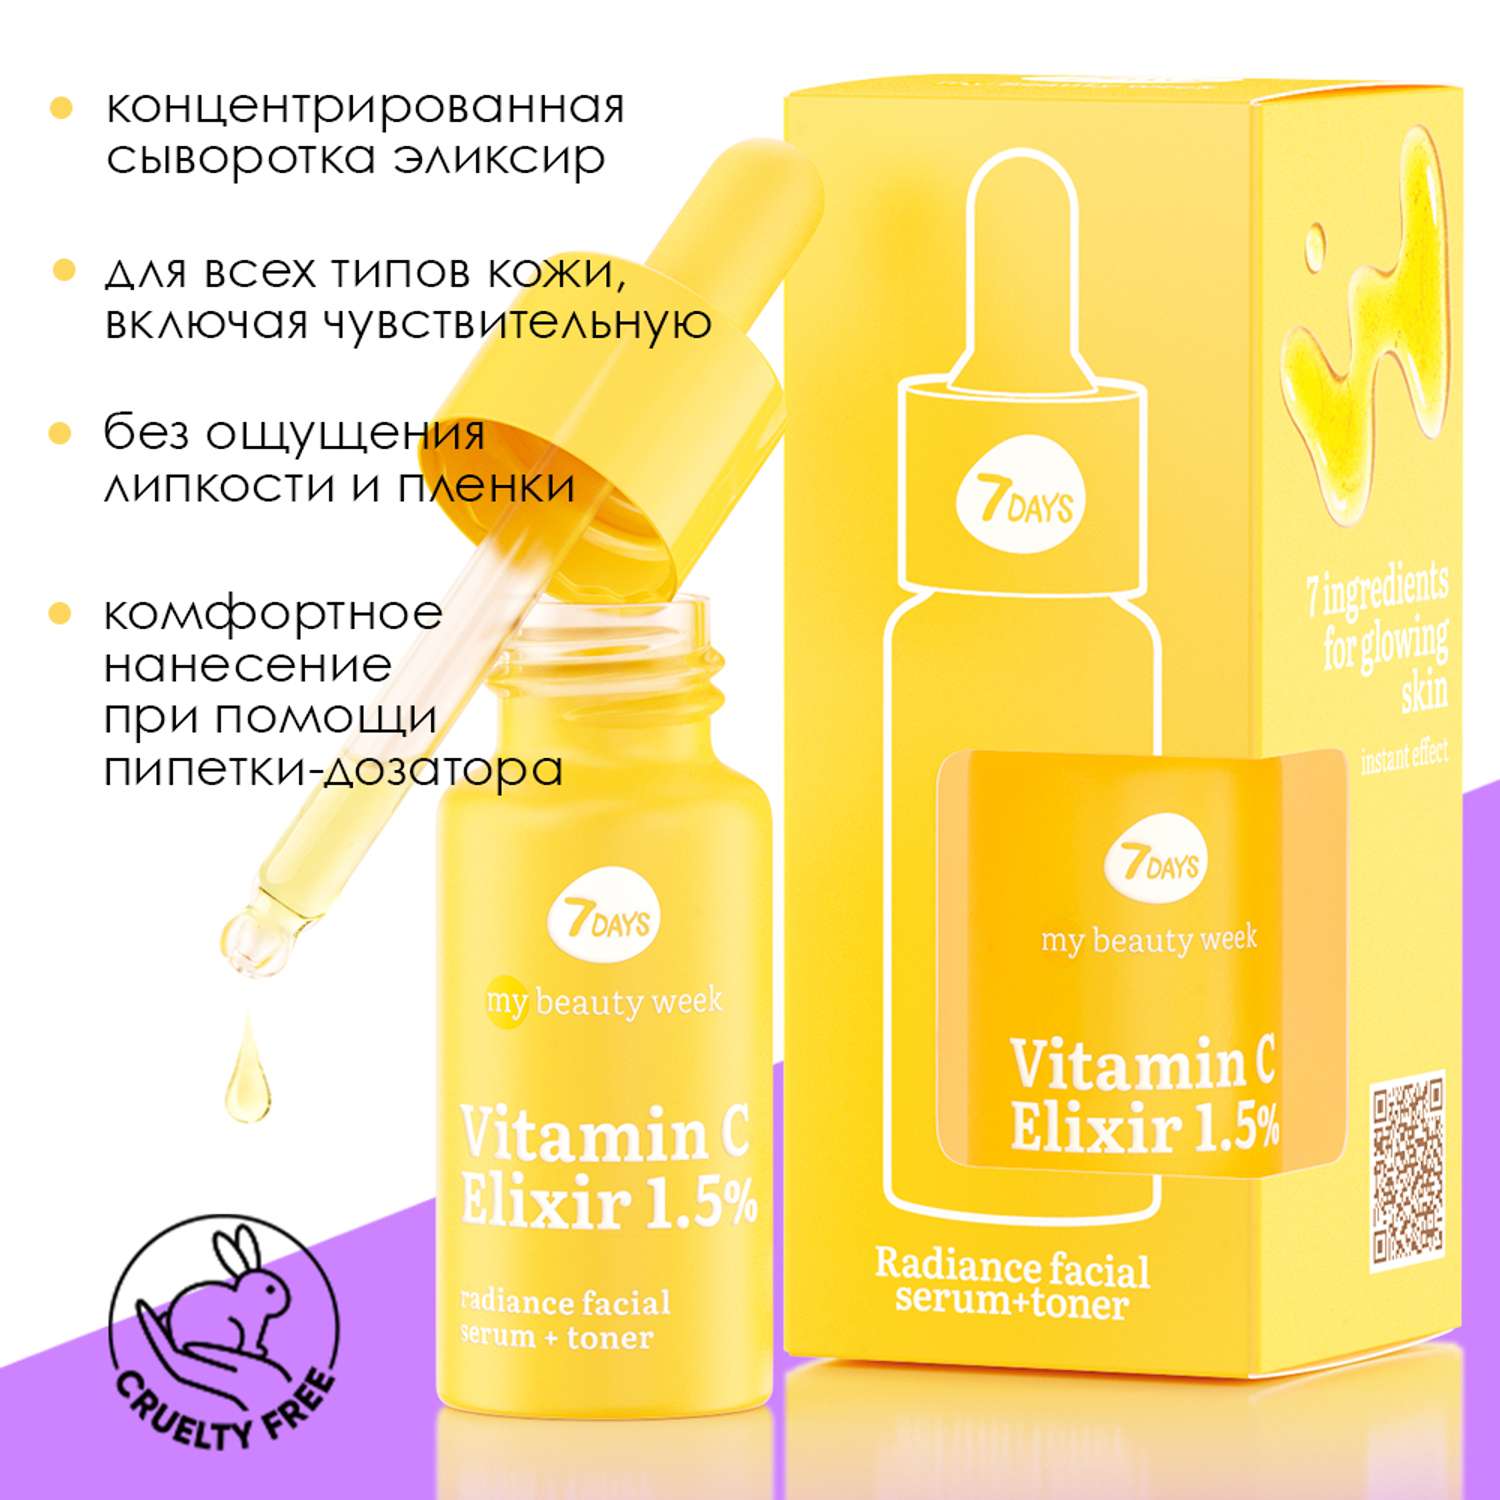 Сыворотка для лица 7DAYS Vitamin С elixir 1.5% придающая сияние коже - фото 5